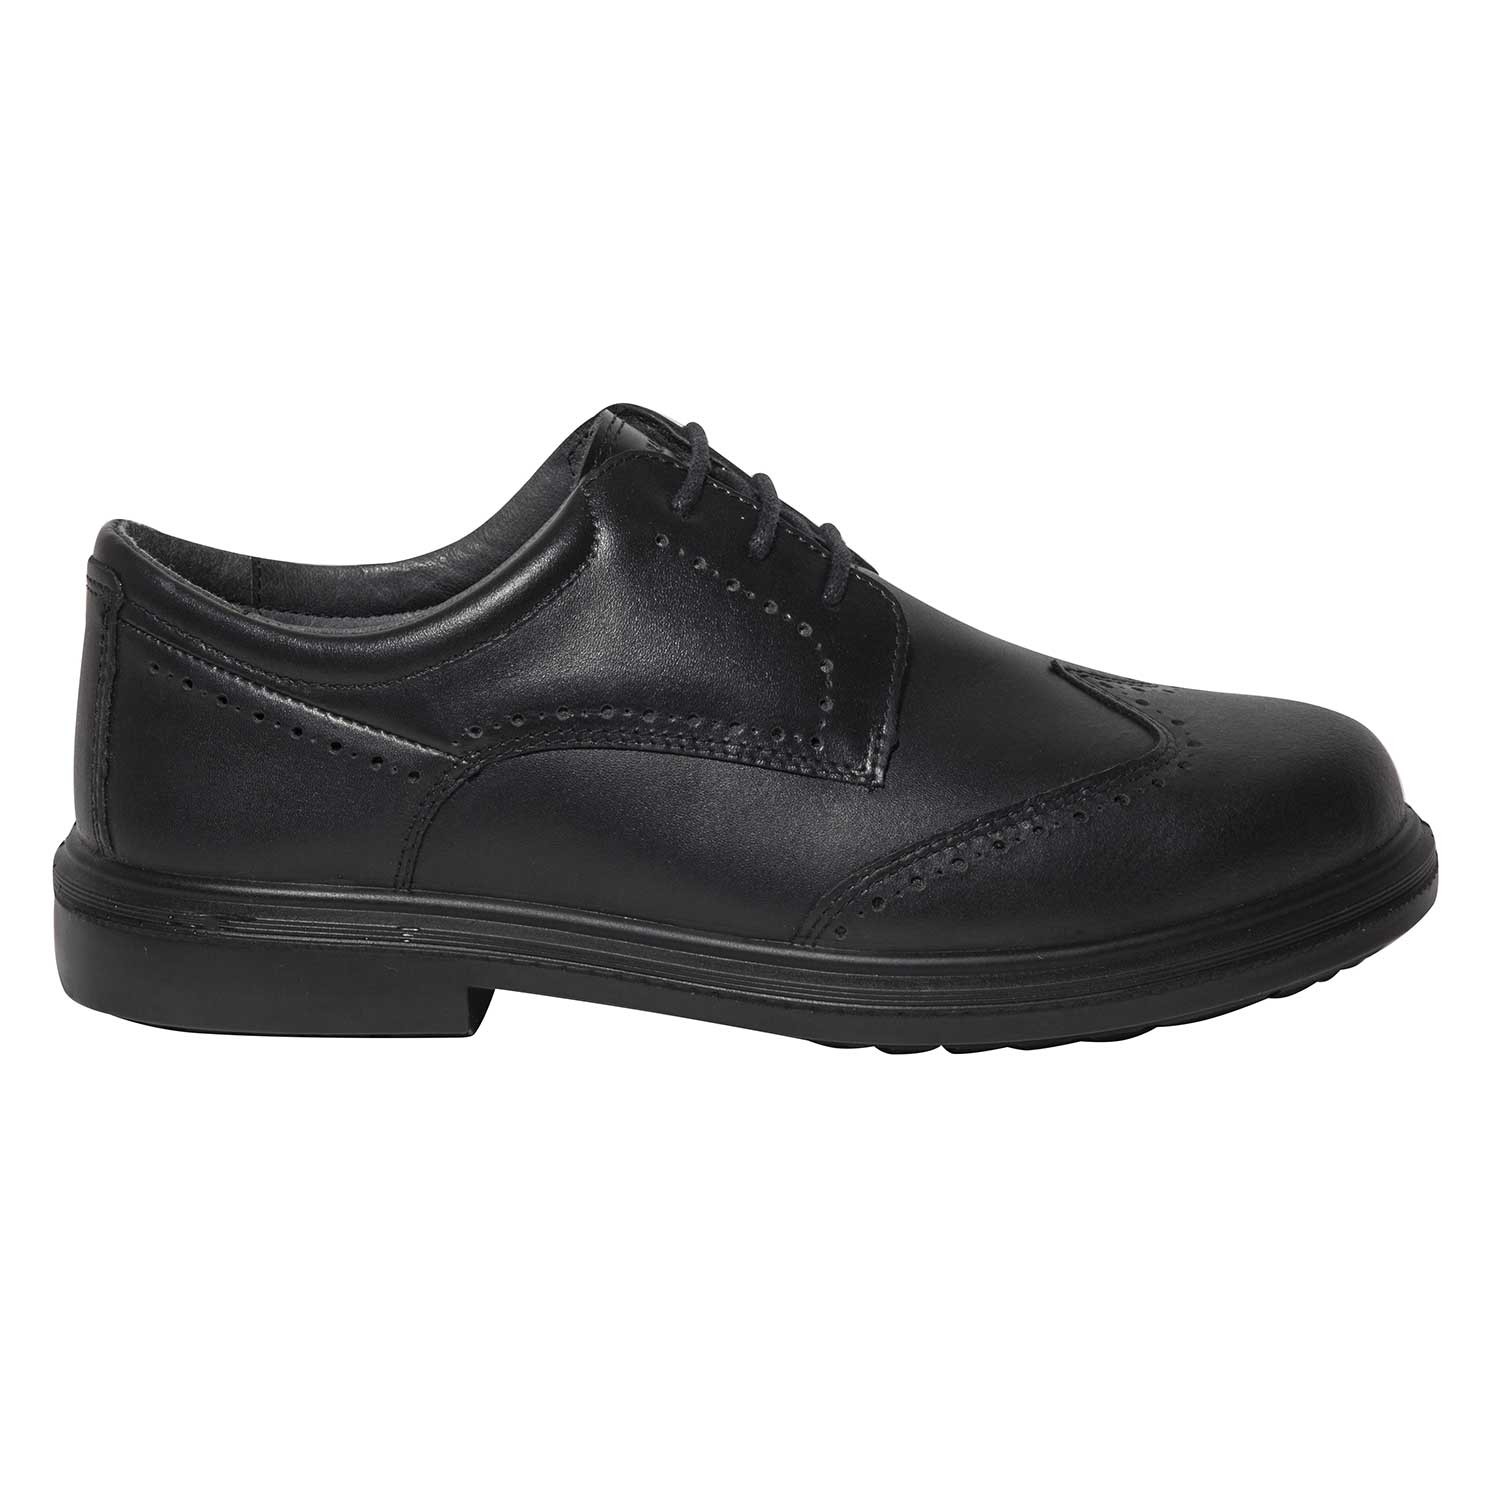 Zapatos de seguridad elegantes | Zapatos para uniforme | Calzado